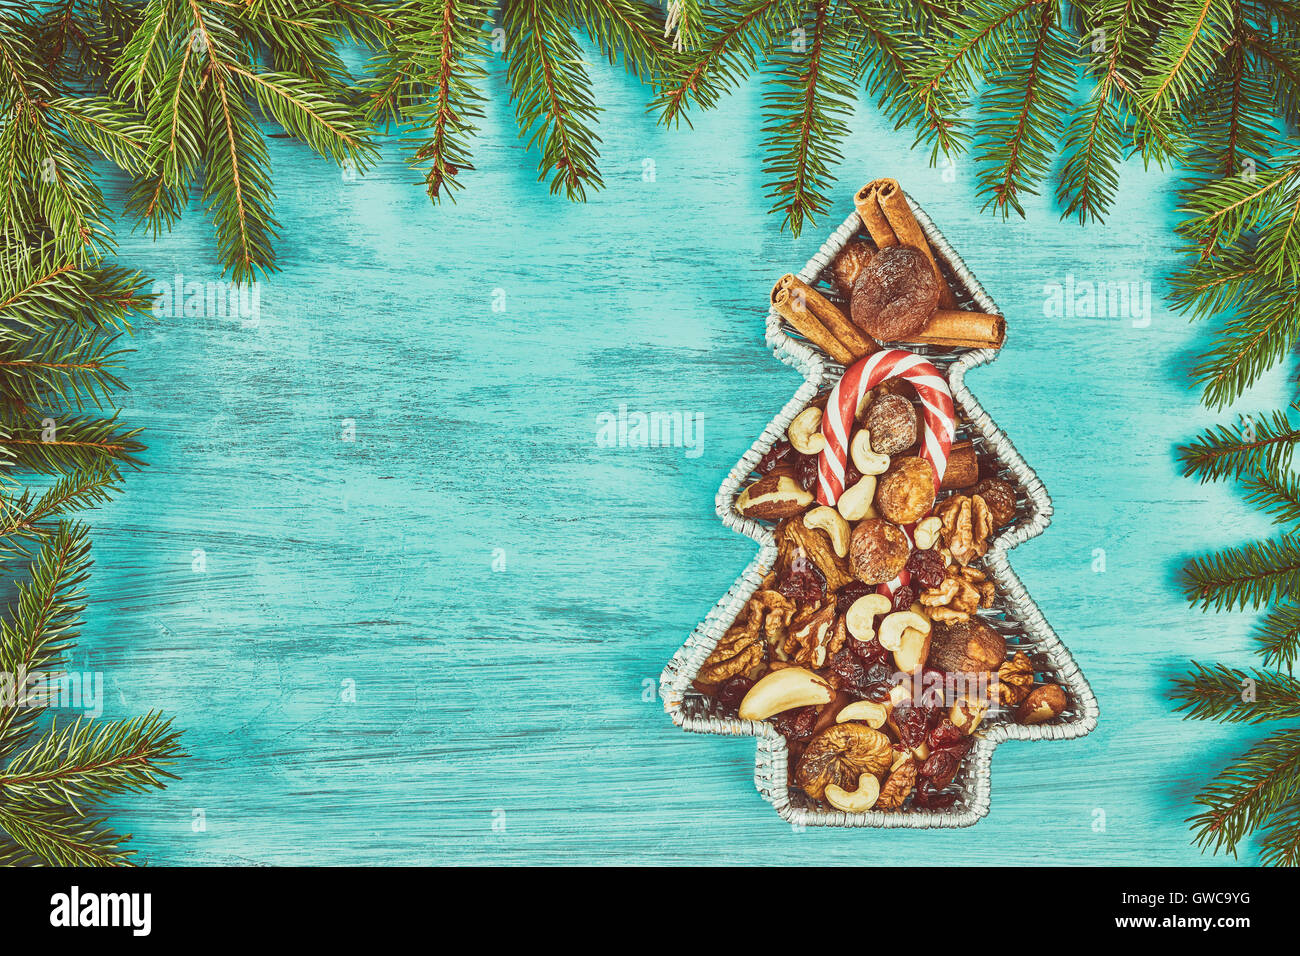 Stylisé en forme d'arbres de Noël rétro récipient rempli de fruits secs sur une table en bois rustique, vue du dessus avec l'exemplaire sp Banque D'Images